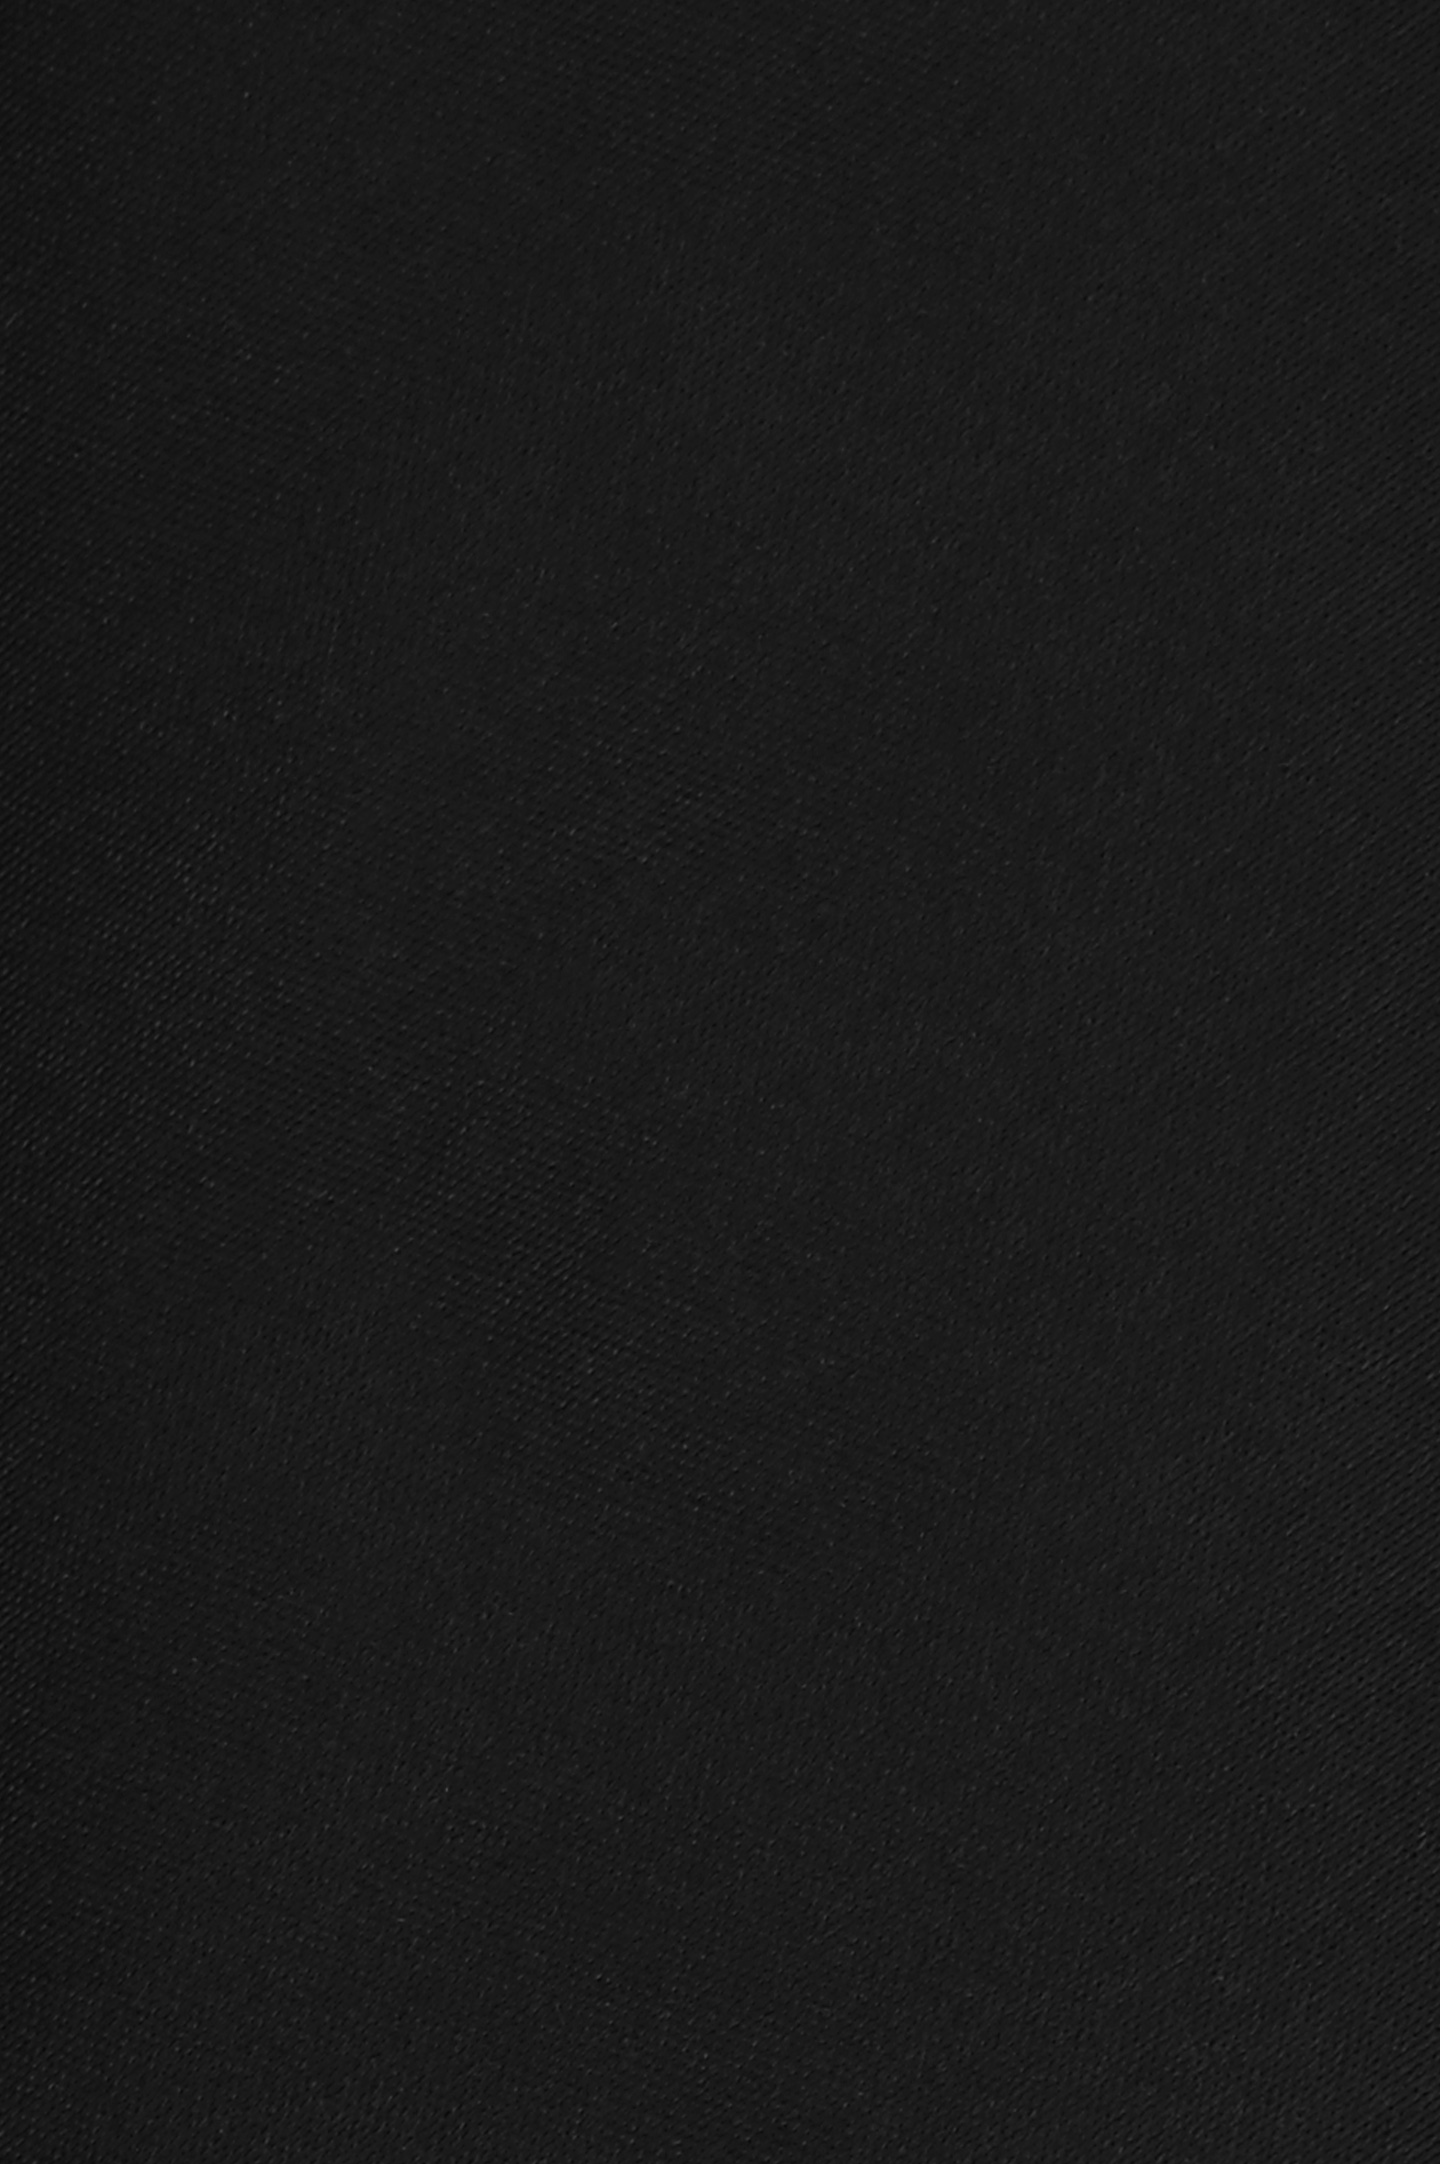 Галстук DOLCE & GABBANA FT061R G0U05, цвет: Черный, Мужской